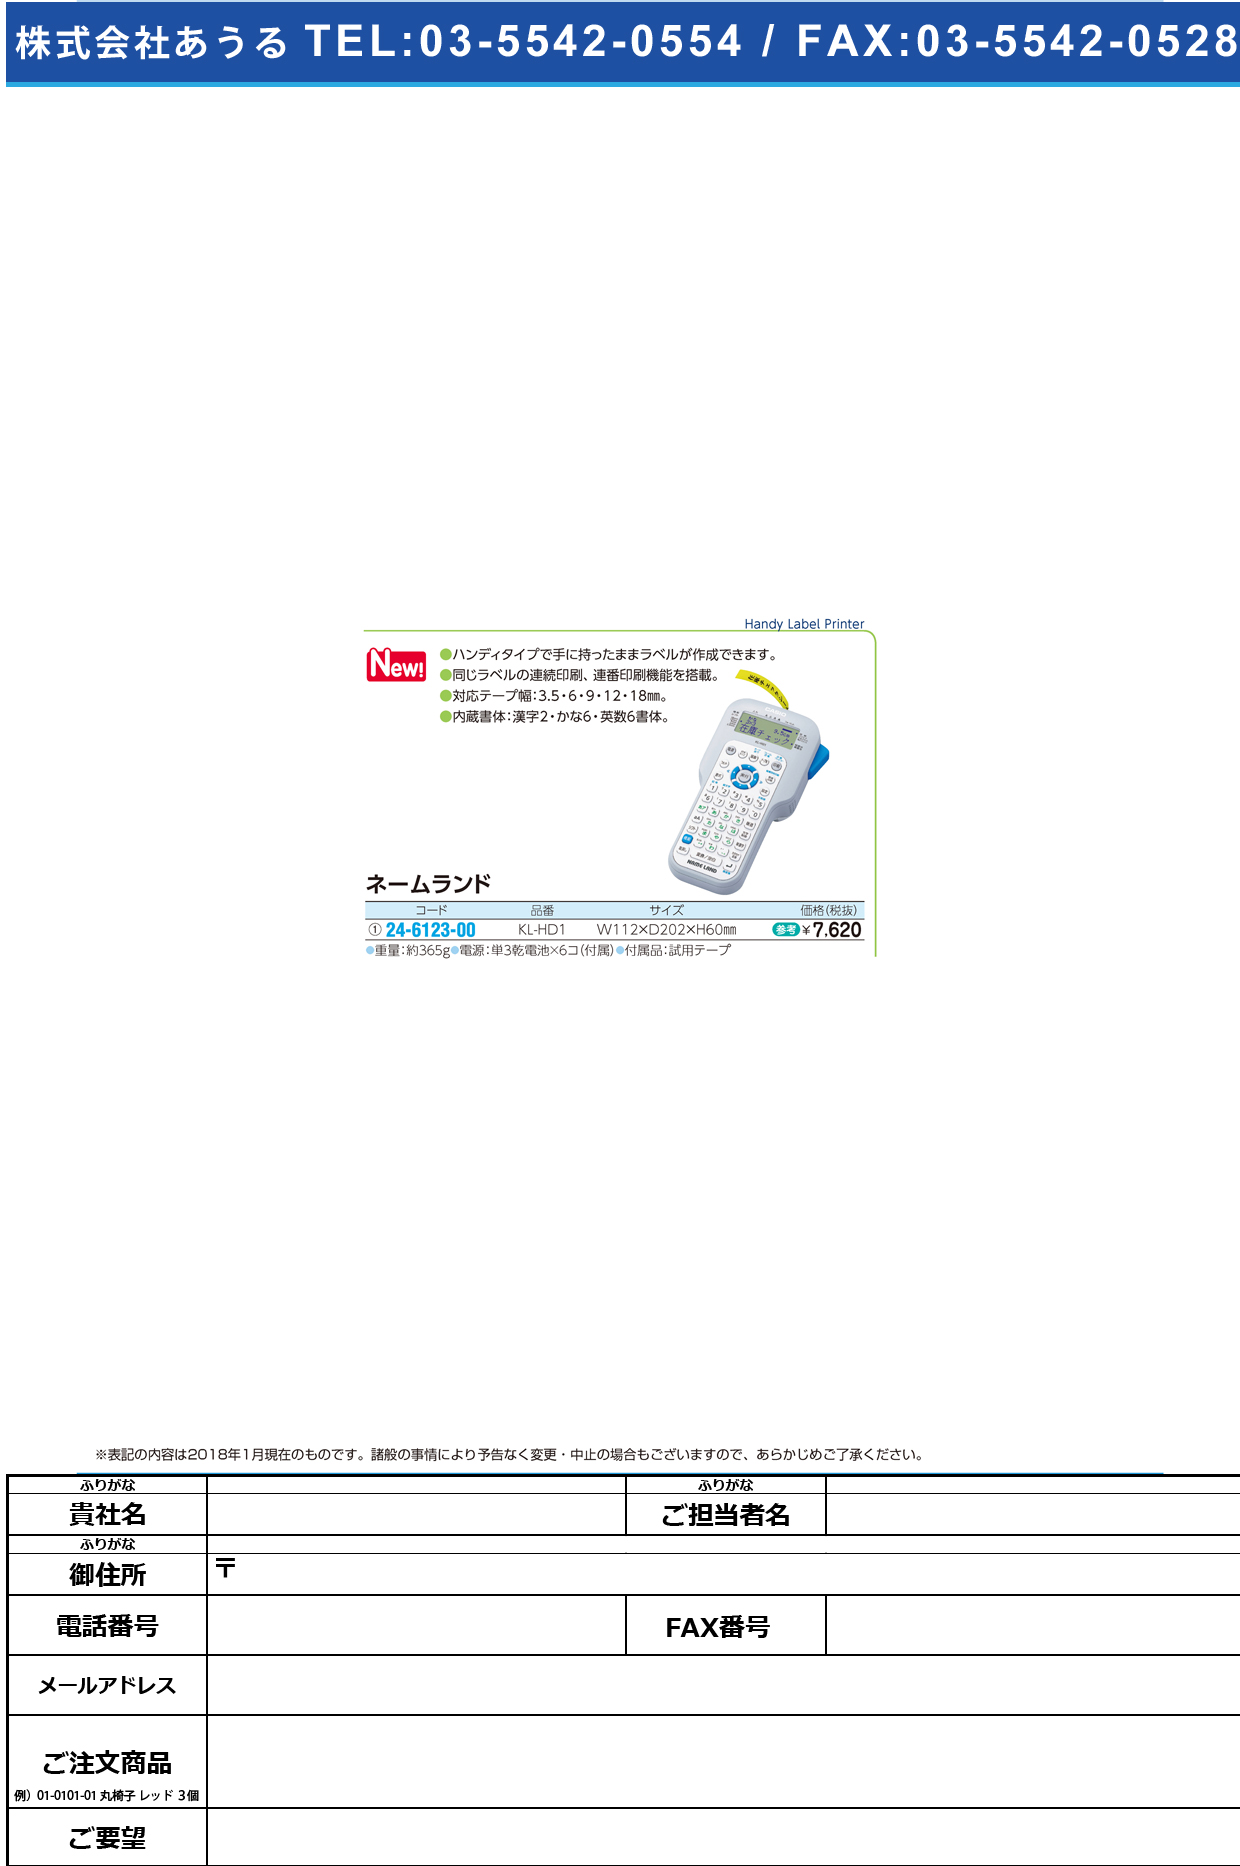 (24-6123-00)ネームランド KL-HD1 ﾈｰﾑﾗﾝﾄﾞ【1台単位】【2018年カタログ商品】